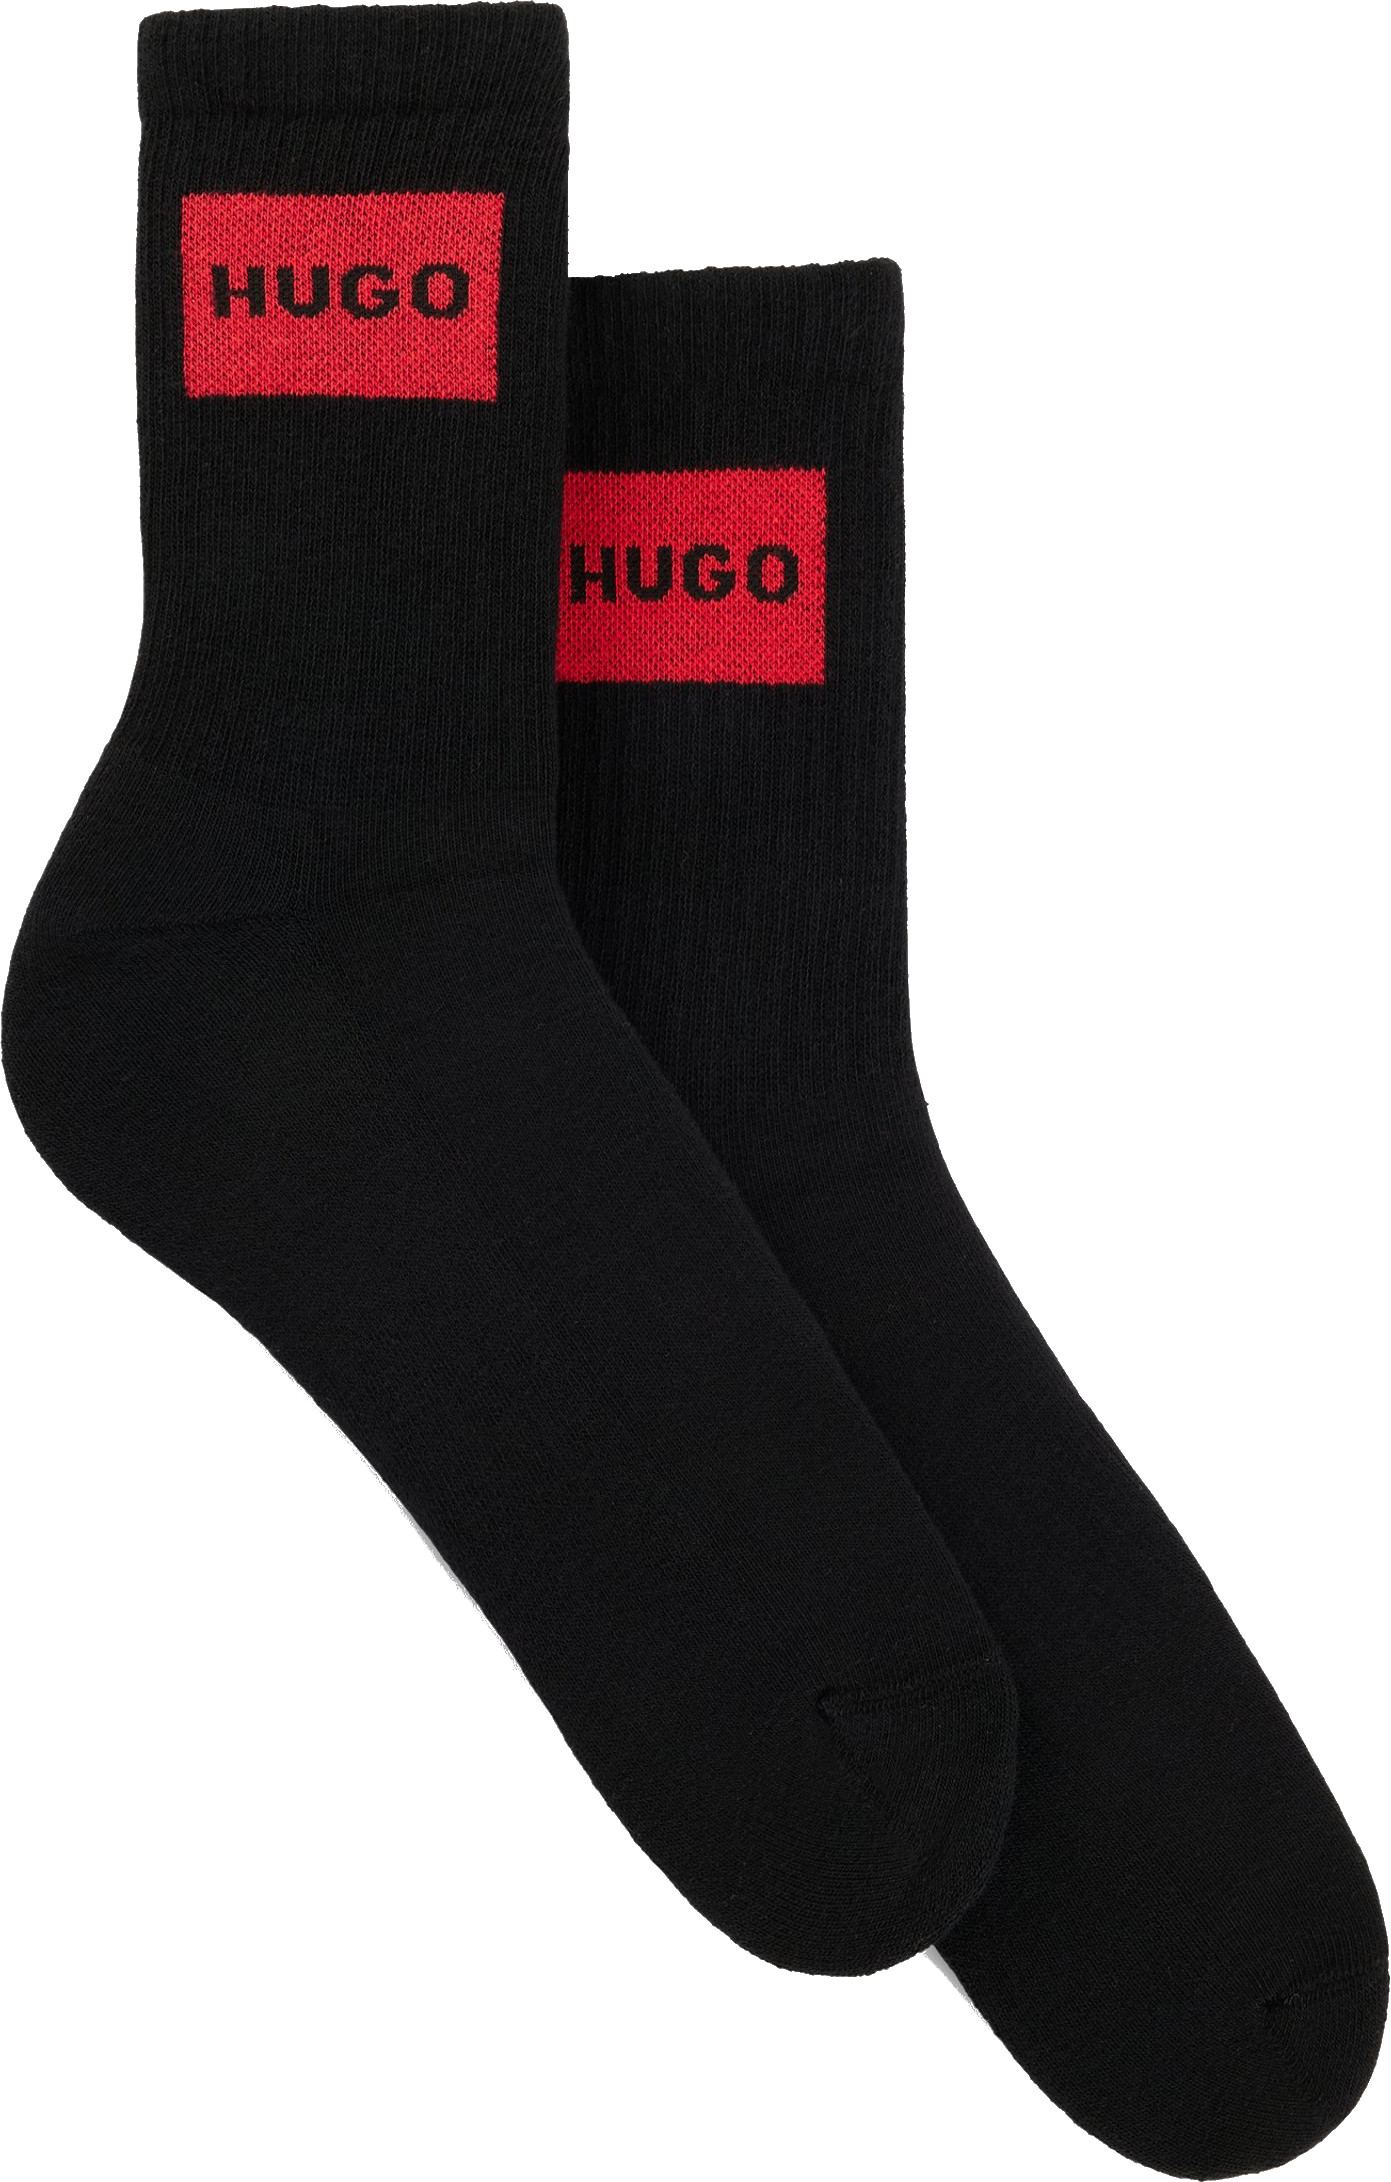 Hugo Boss 2 PACK - dámské ponožky HUGO 50510661-001 39-42